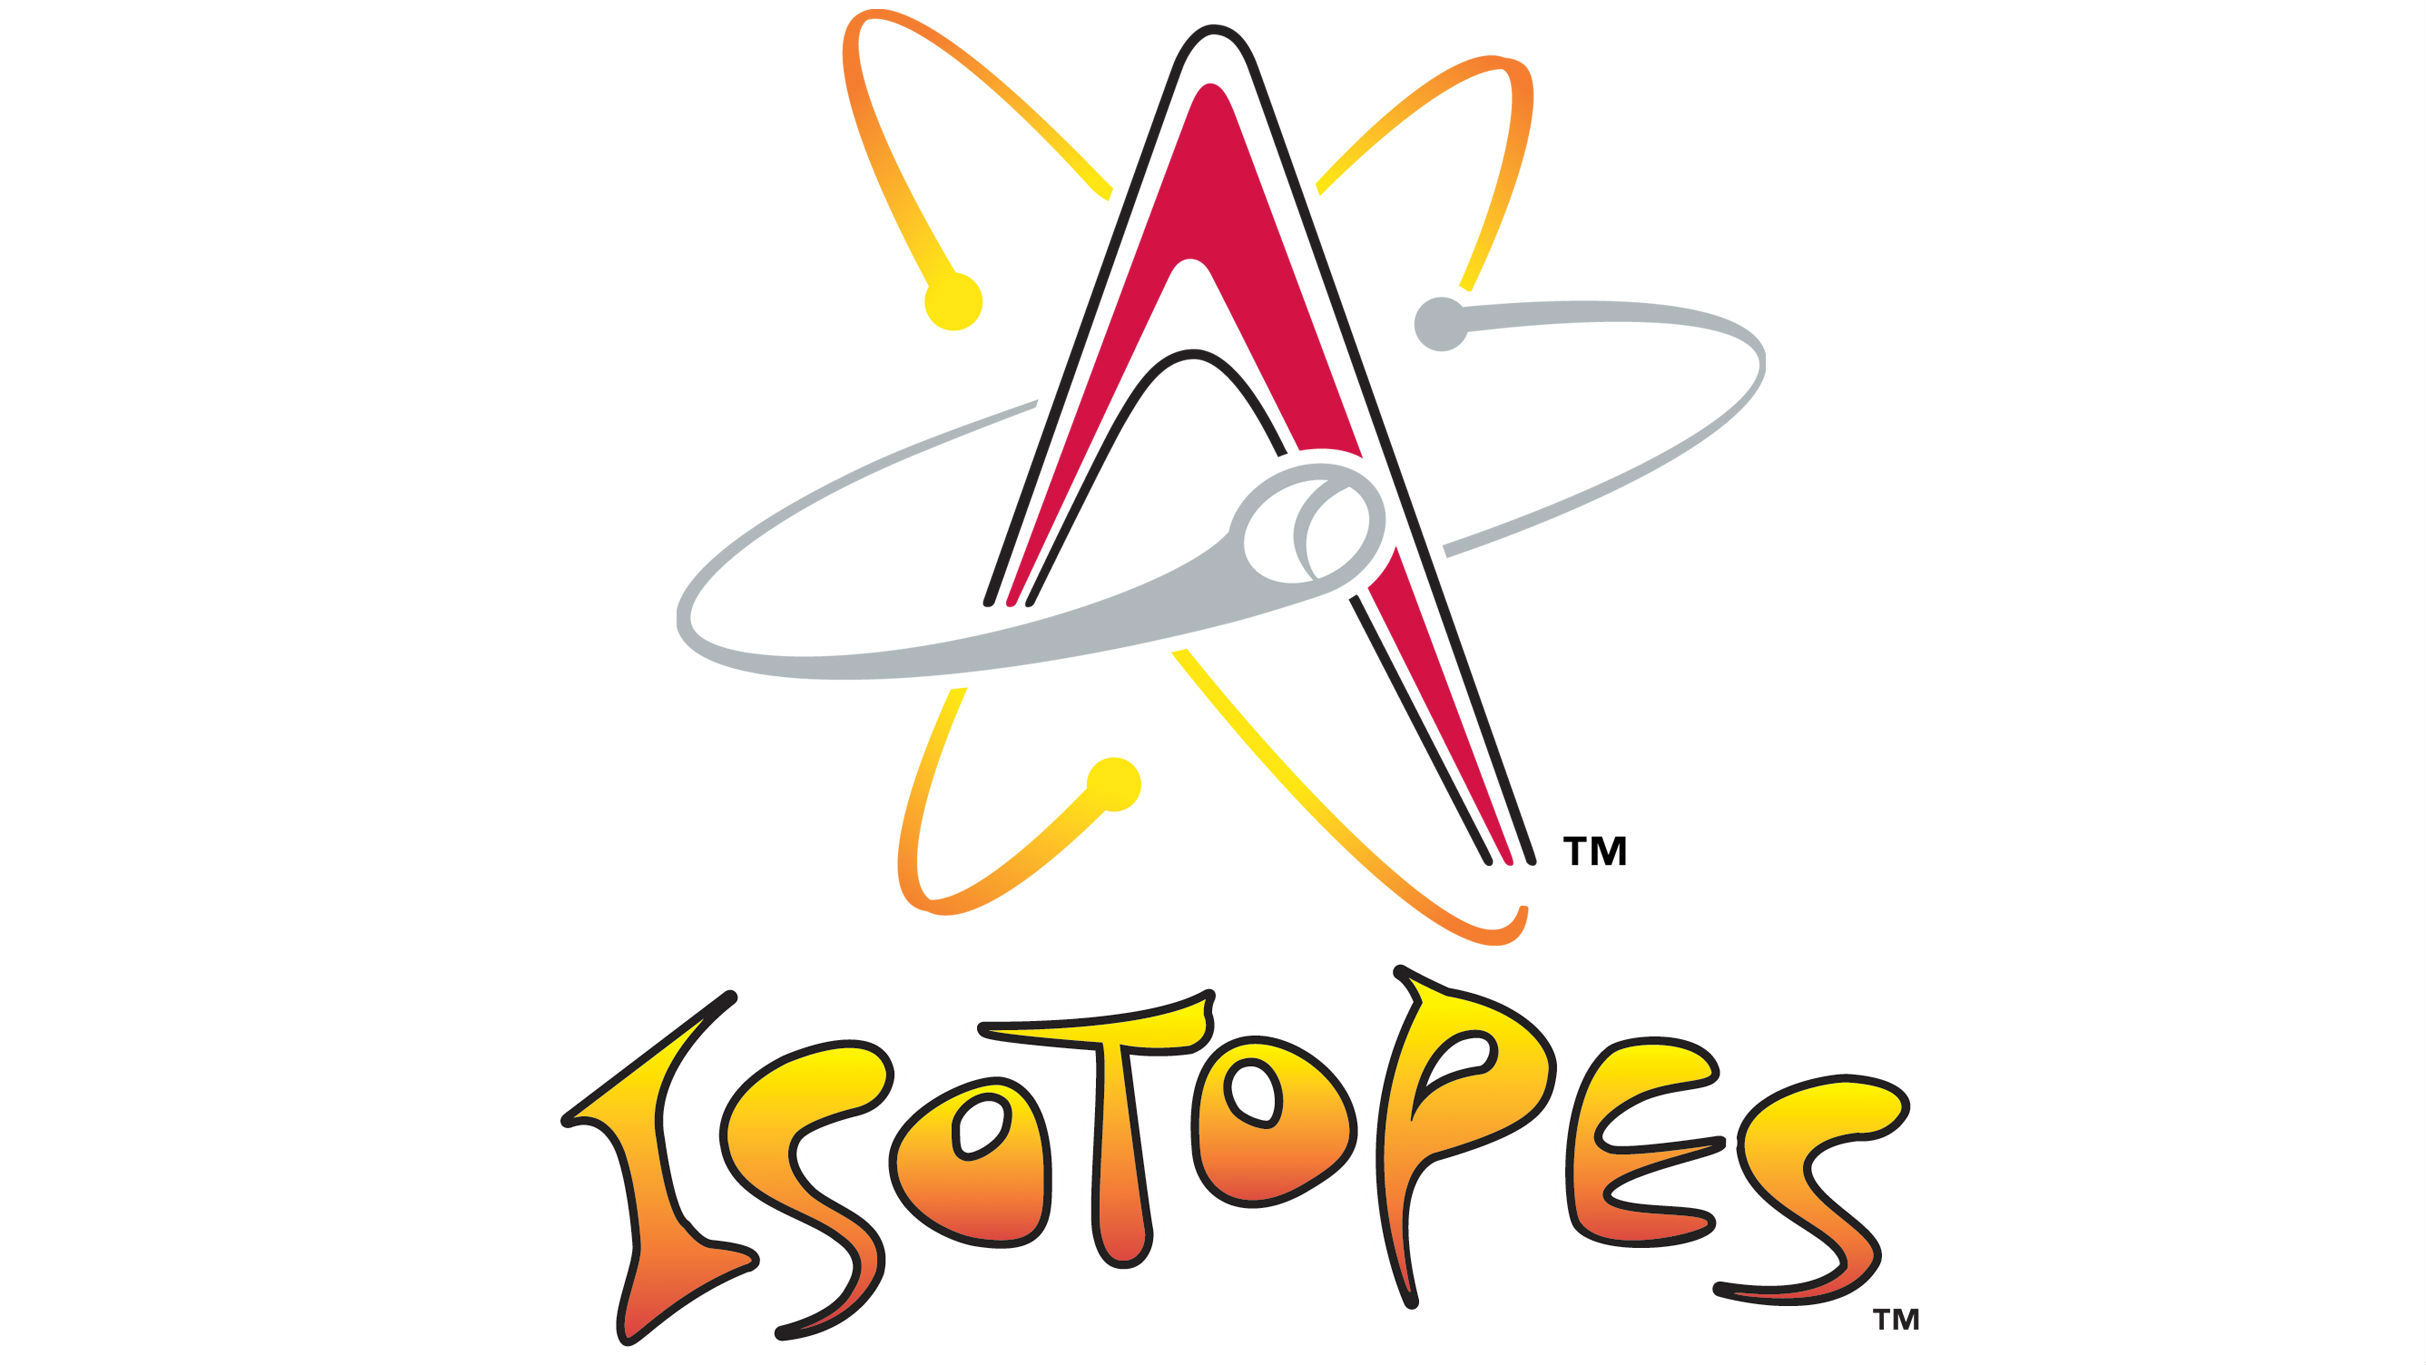 Albuquerque Isotopes vs. Sugar Land Space Cowboys